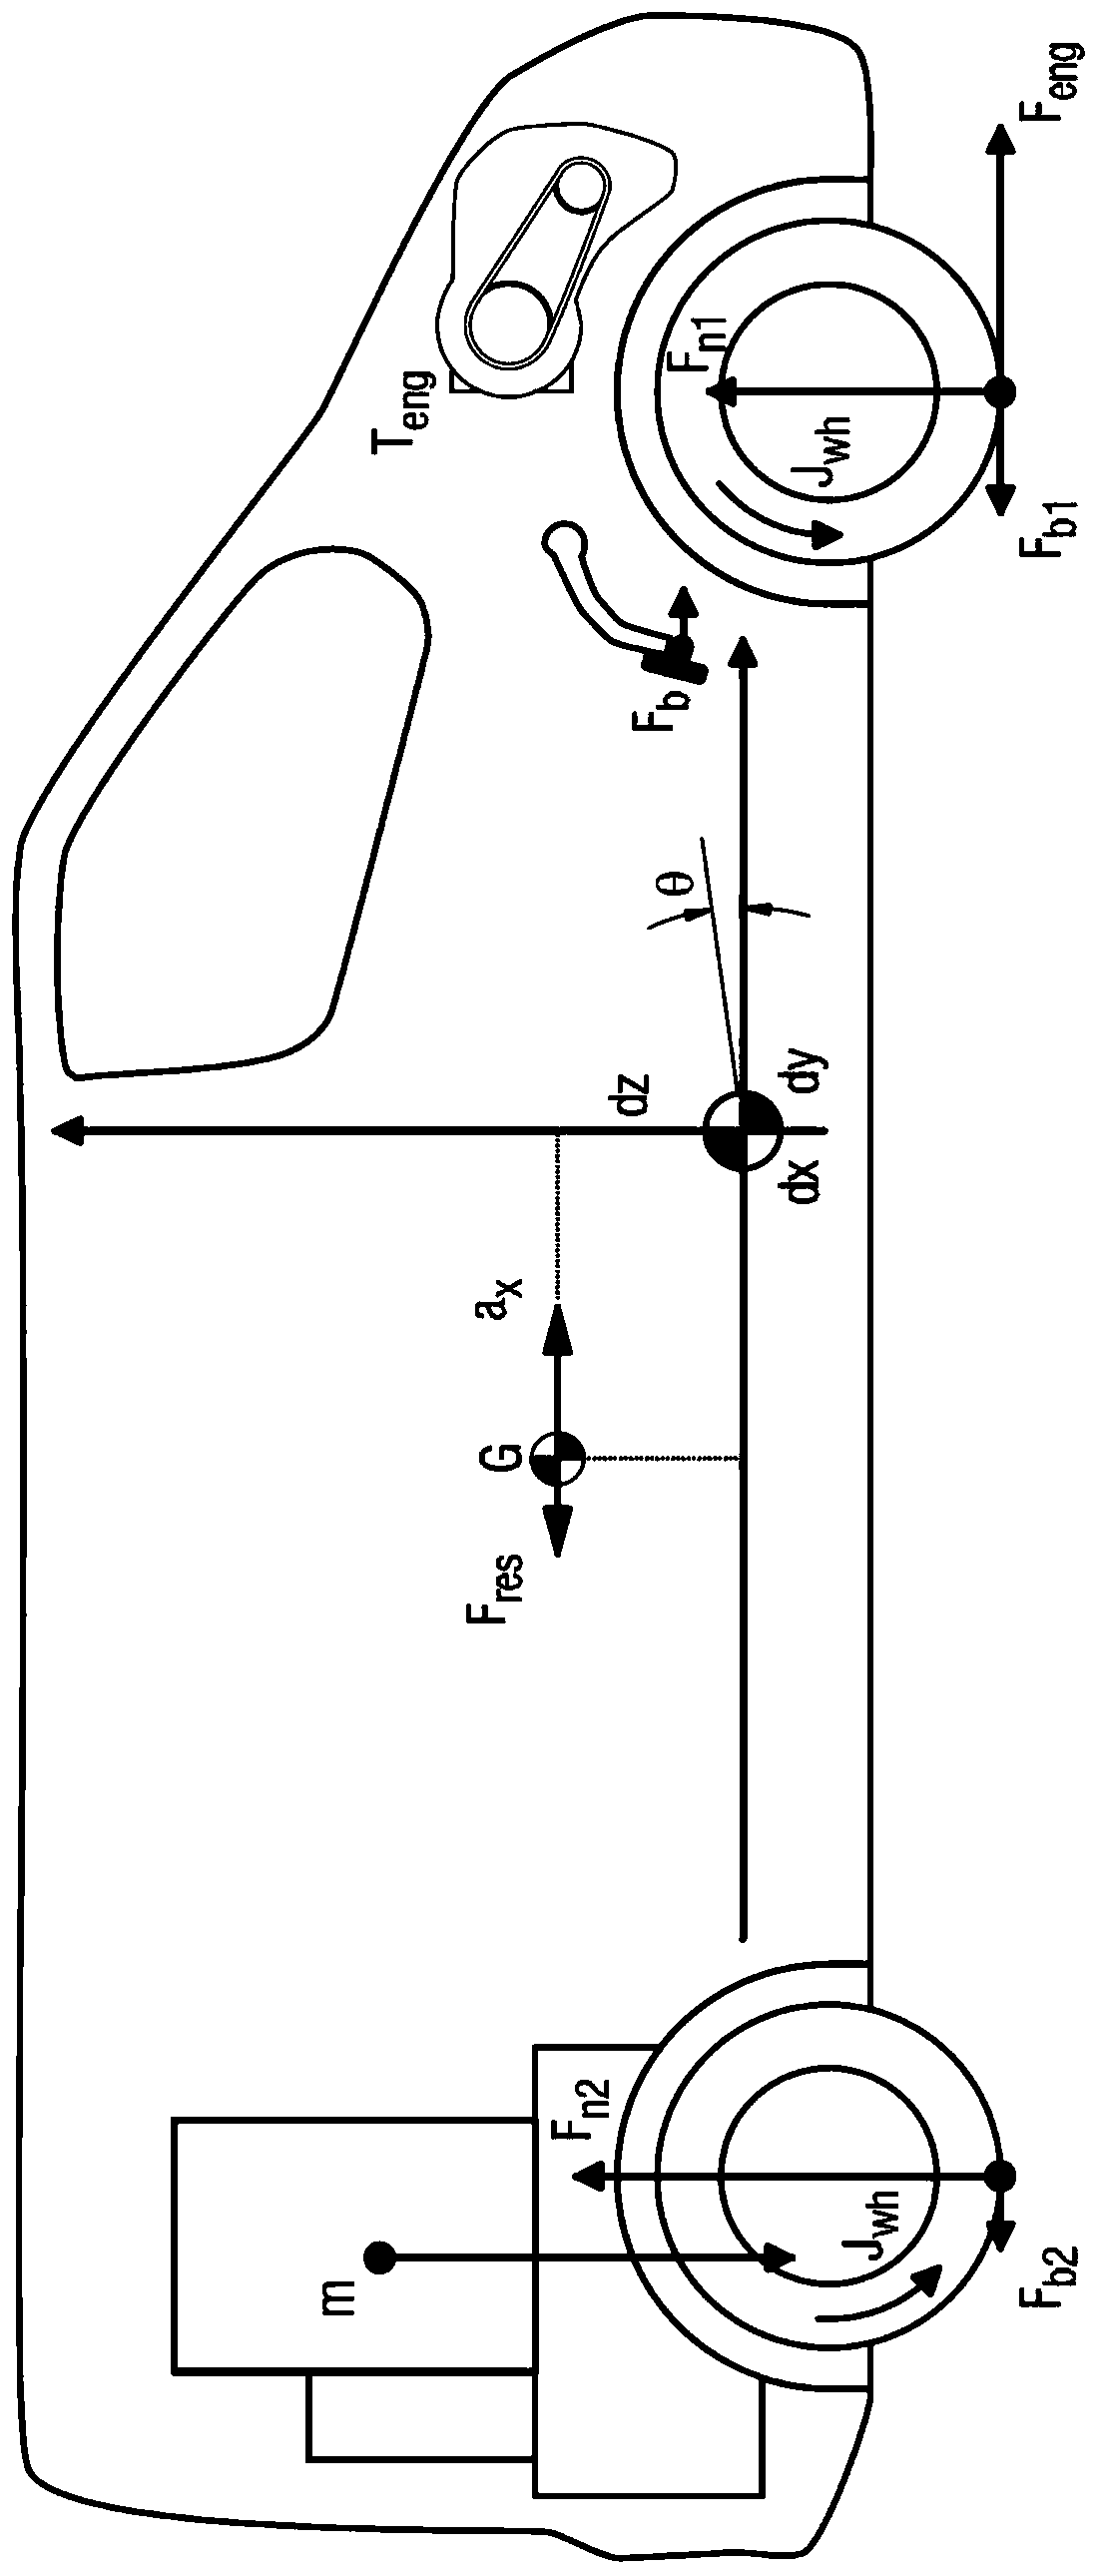 Method for determining error of an inertial sensor